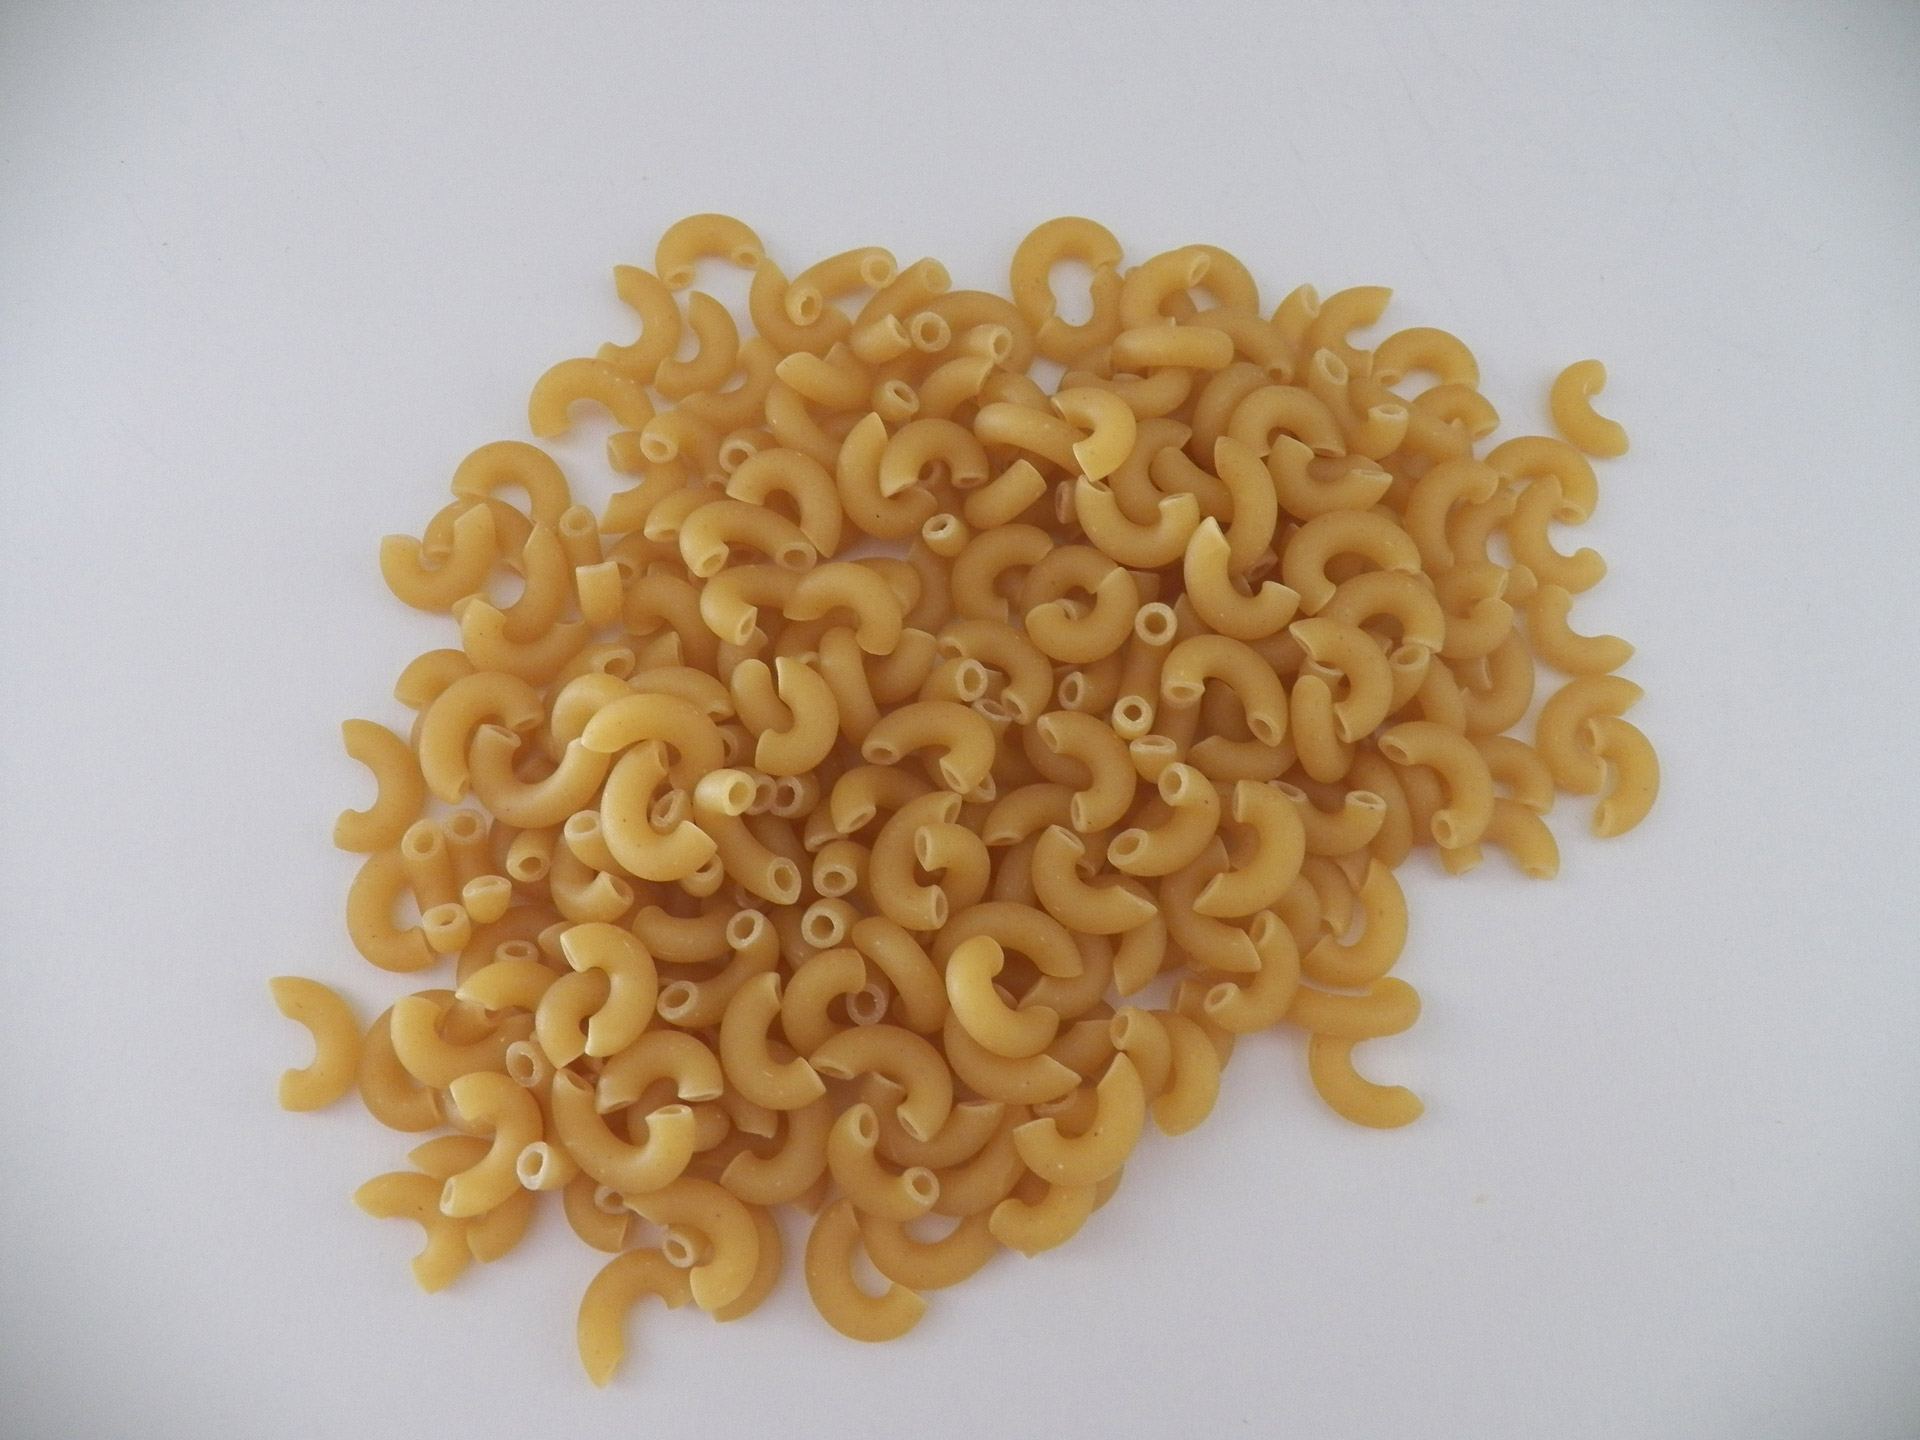 elbow macaroni pasta cooking free photo